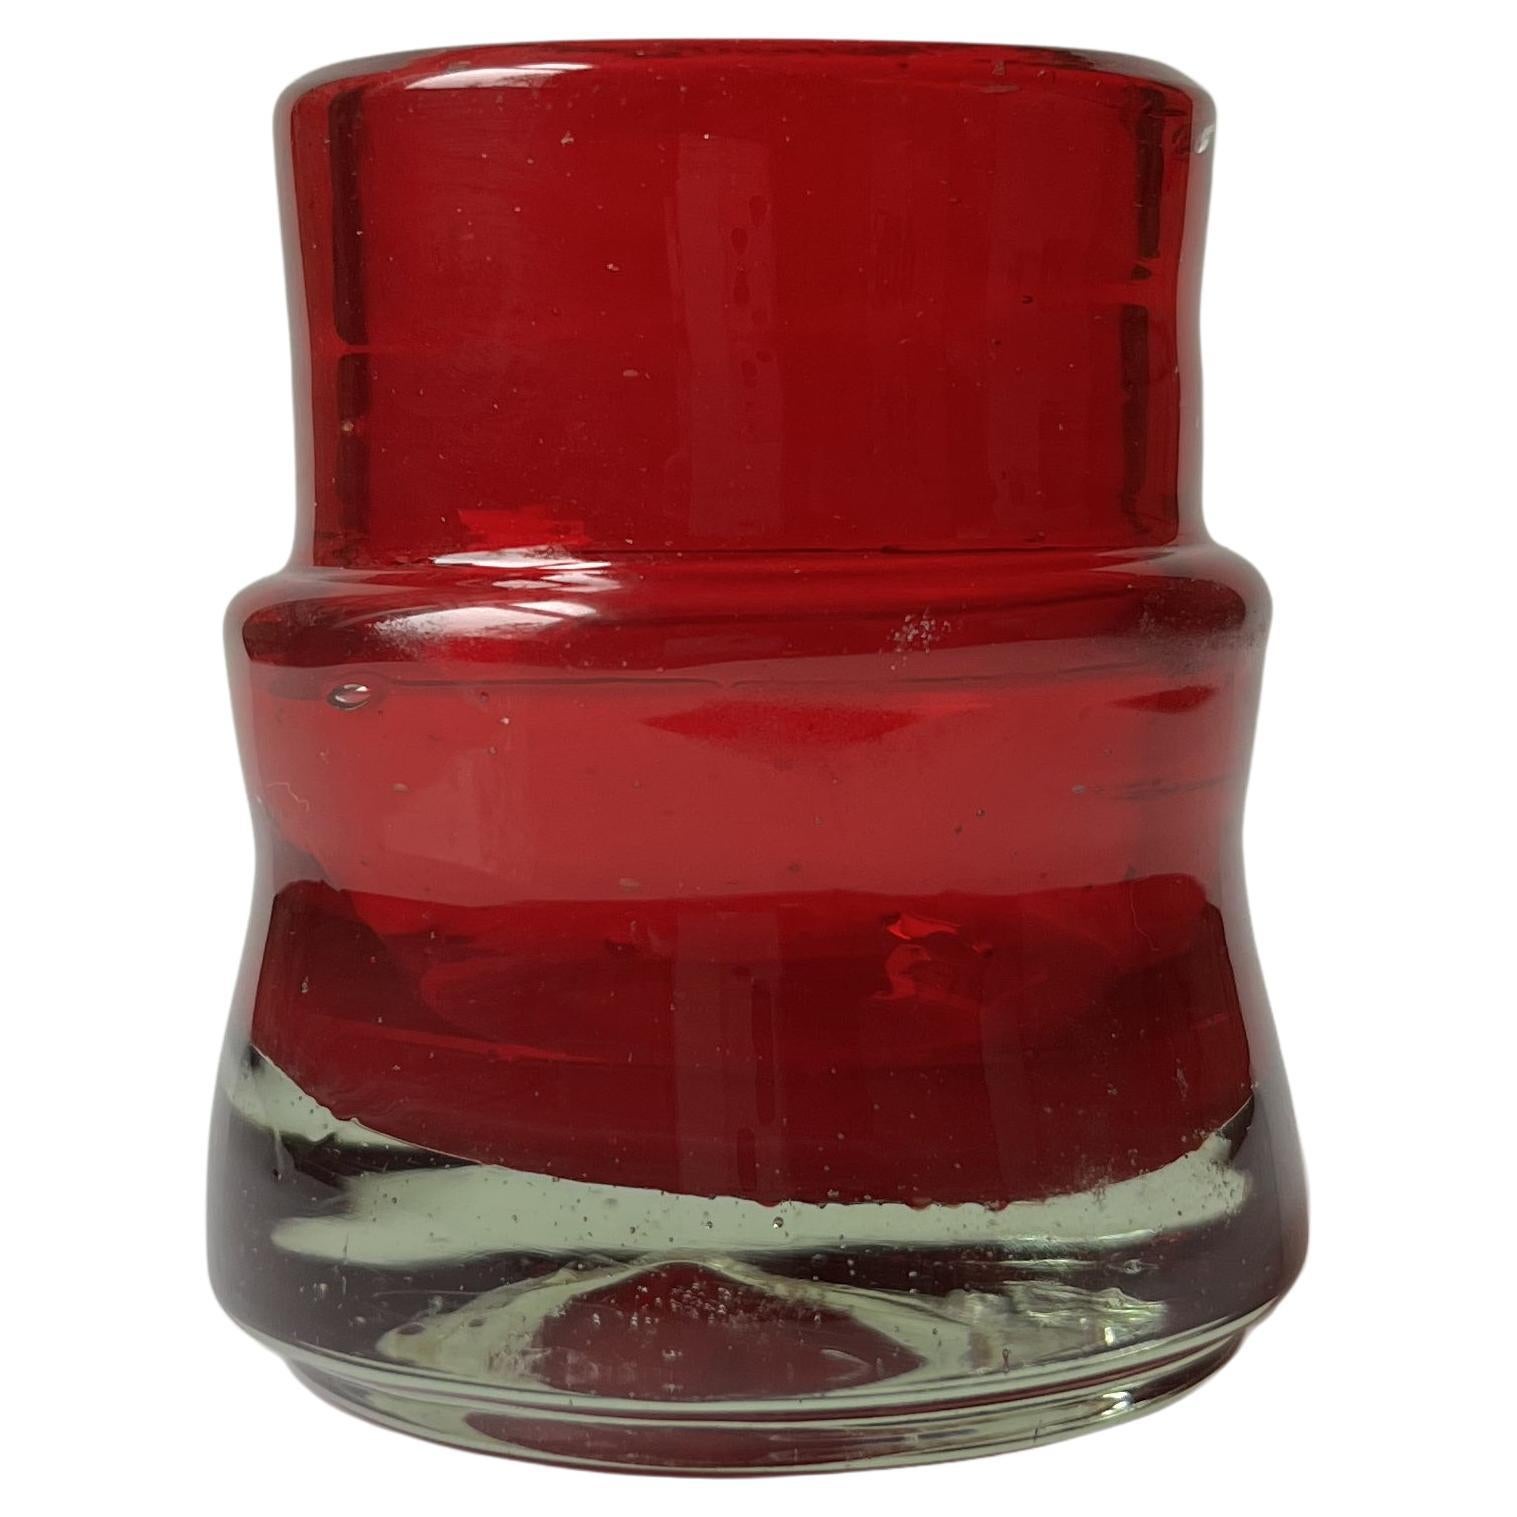 Acatl ist eine Kollektion von Bechern und Gläsern für Likör, Mezcal und Tequila in 6 verschiedenen Farben. 

Hergestellt in Jalisco, Mexiko, aus 100% recyceltem Glas. 

Die Form dieser Collection'S ergibt sich aus der Verbindung von zwei Elementen.